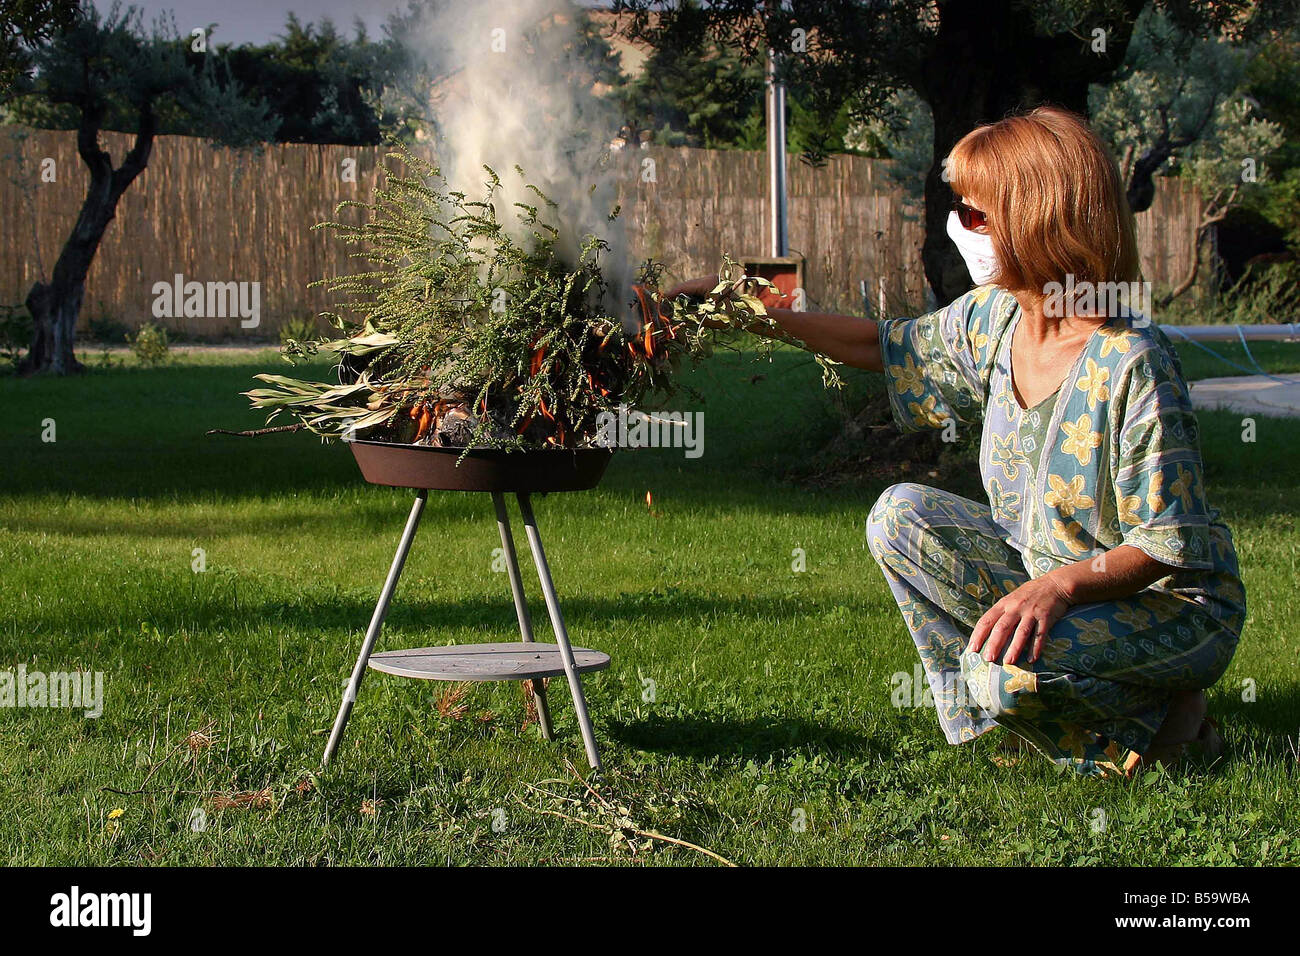 L'herbe à poux annuel, petite herbe à poux (Ambrosia artemisiifolia) être brûlé par une femme dans un jardin Banque D'Images